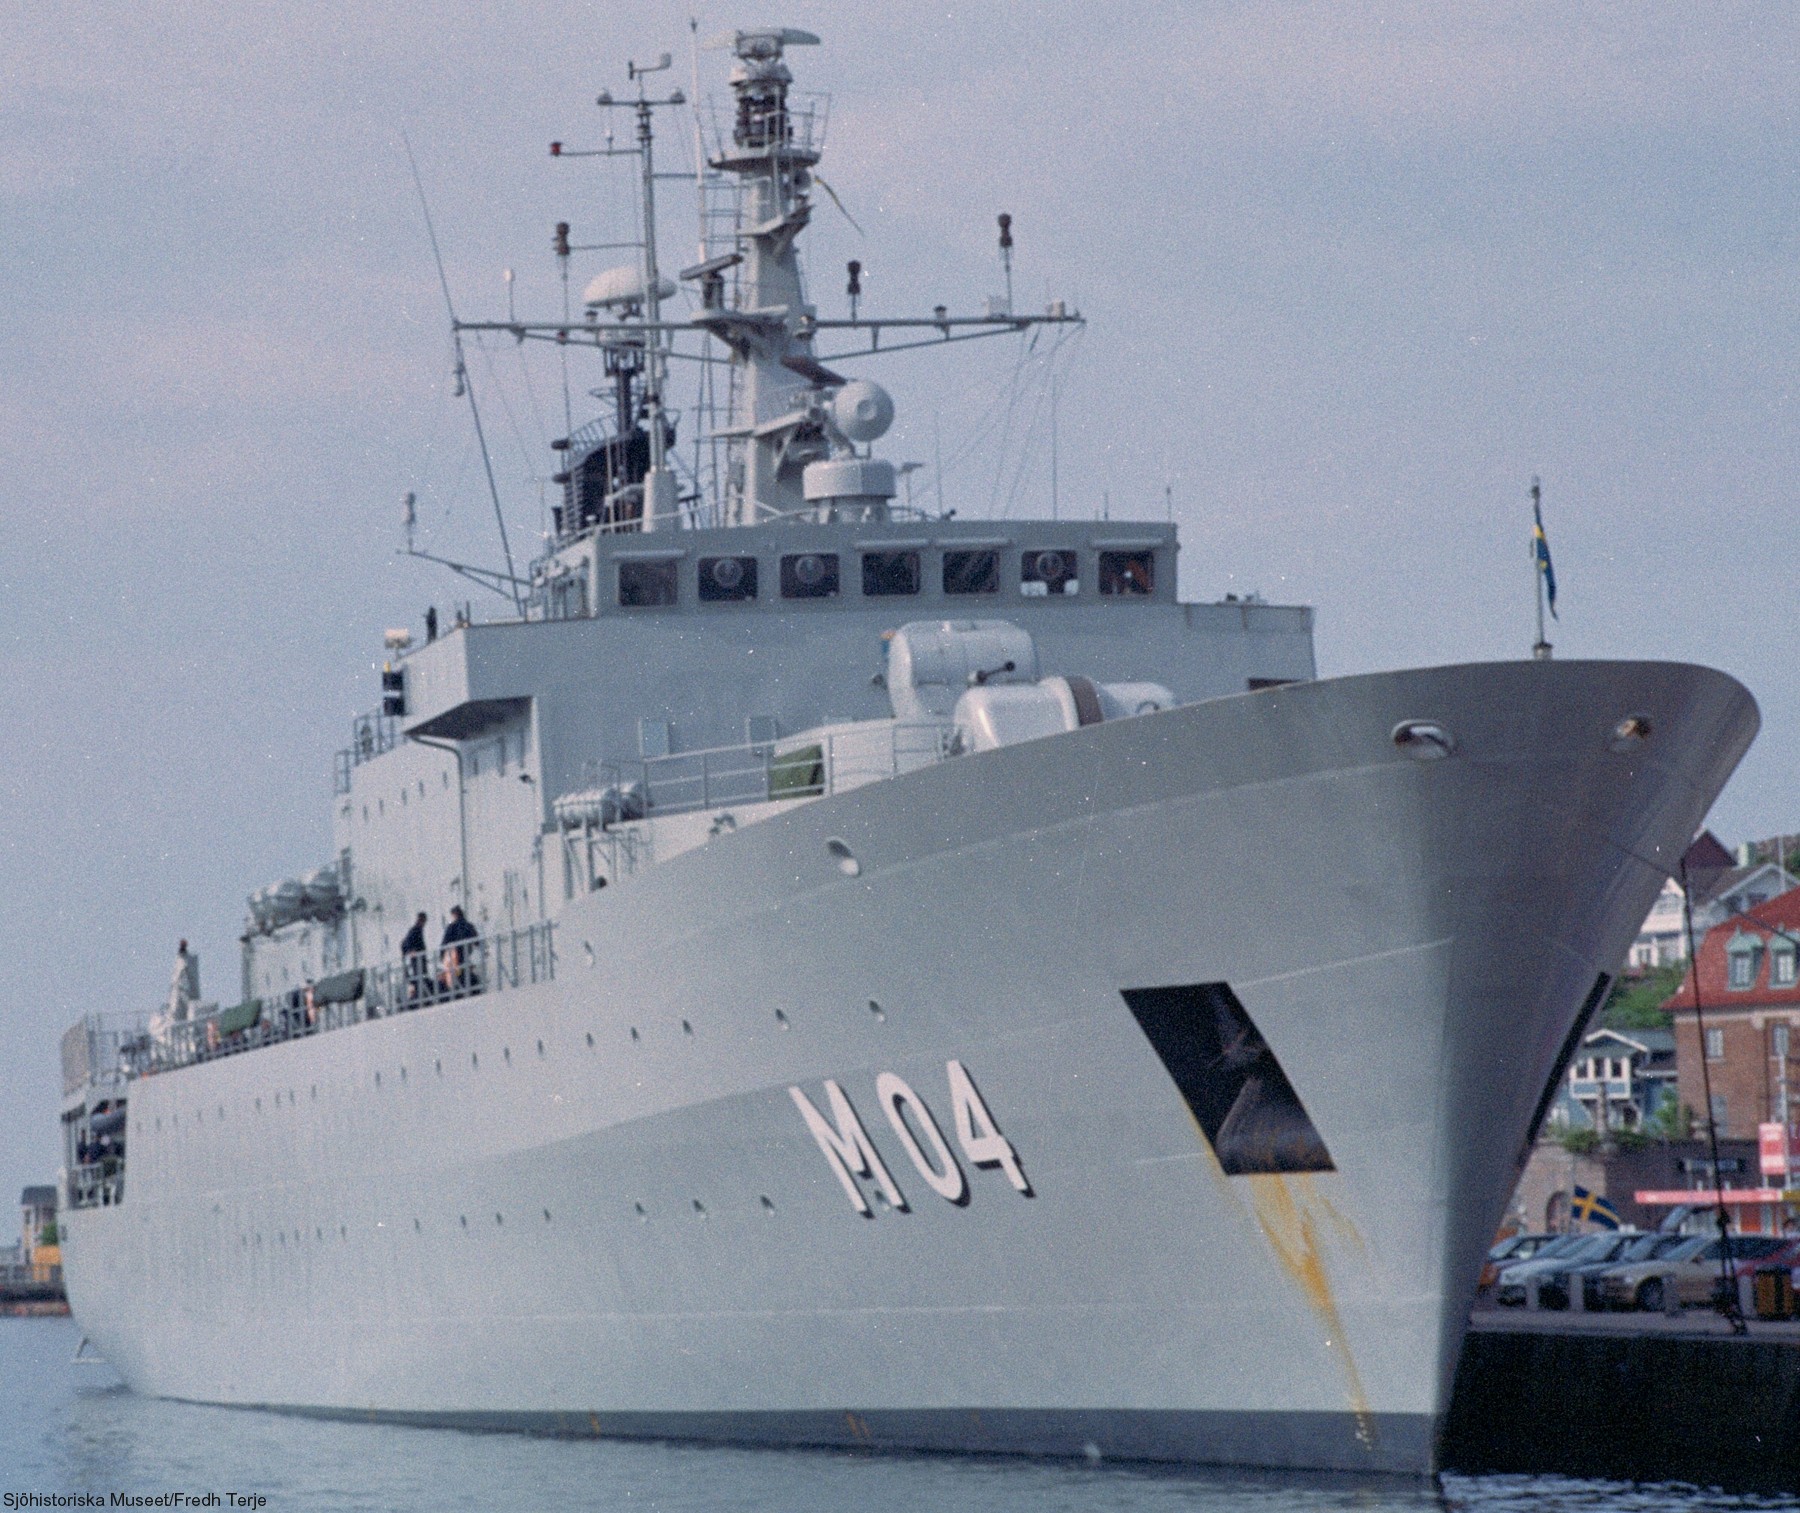 m04 hswms carlskrona hms minelayer ocean patrol vessel opv swedish navy svenska marinen försvarsmakten 11